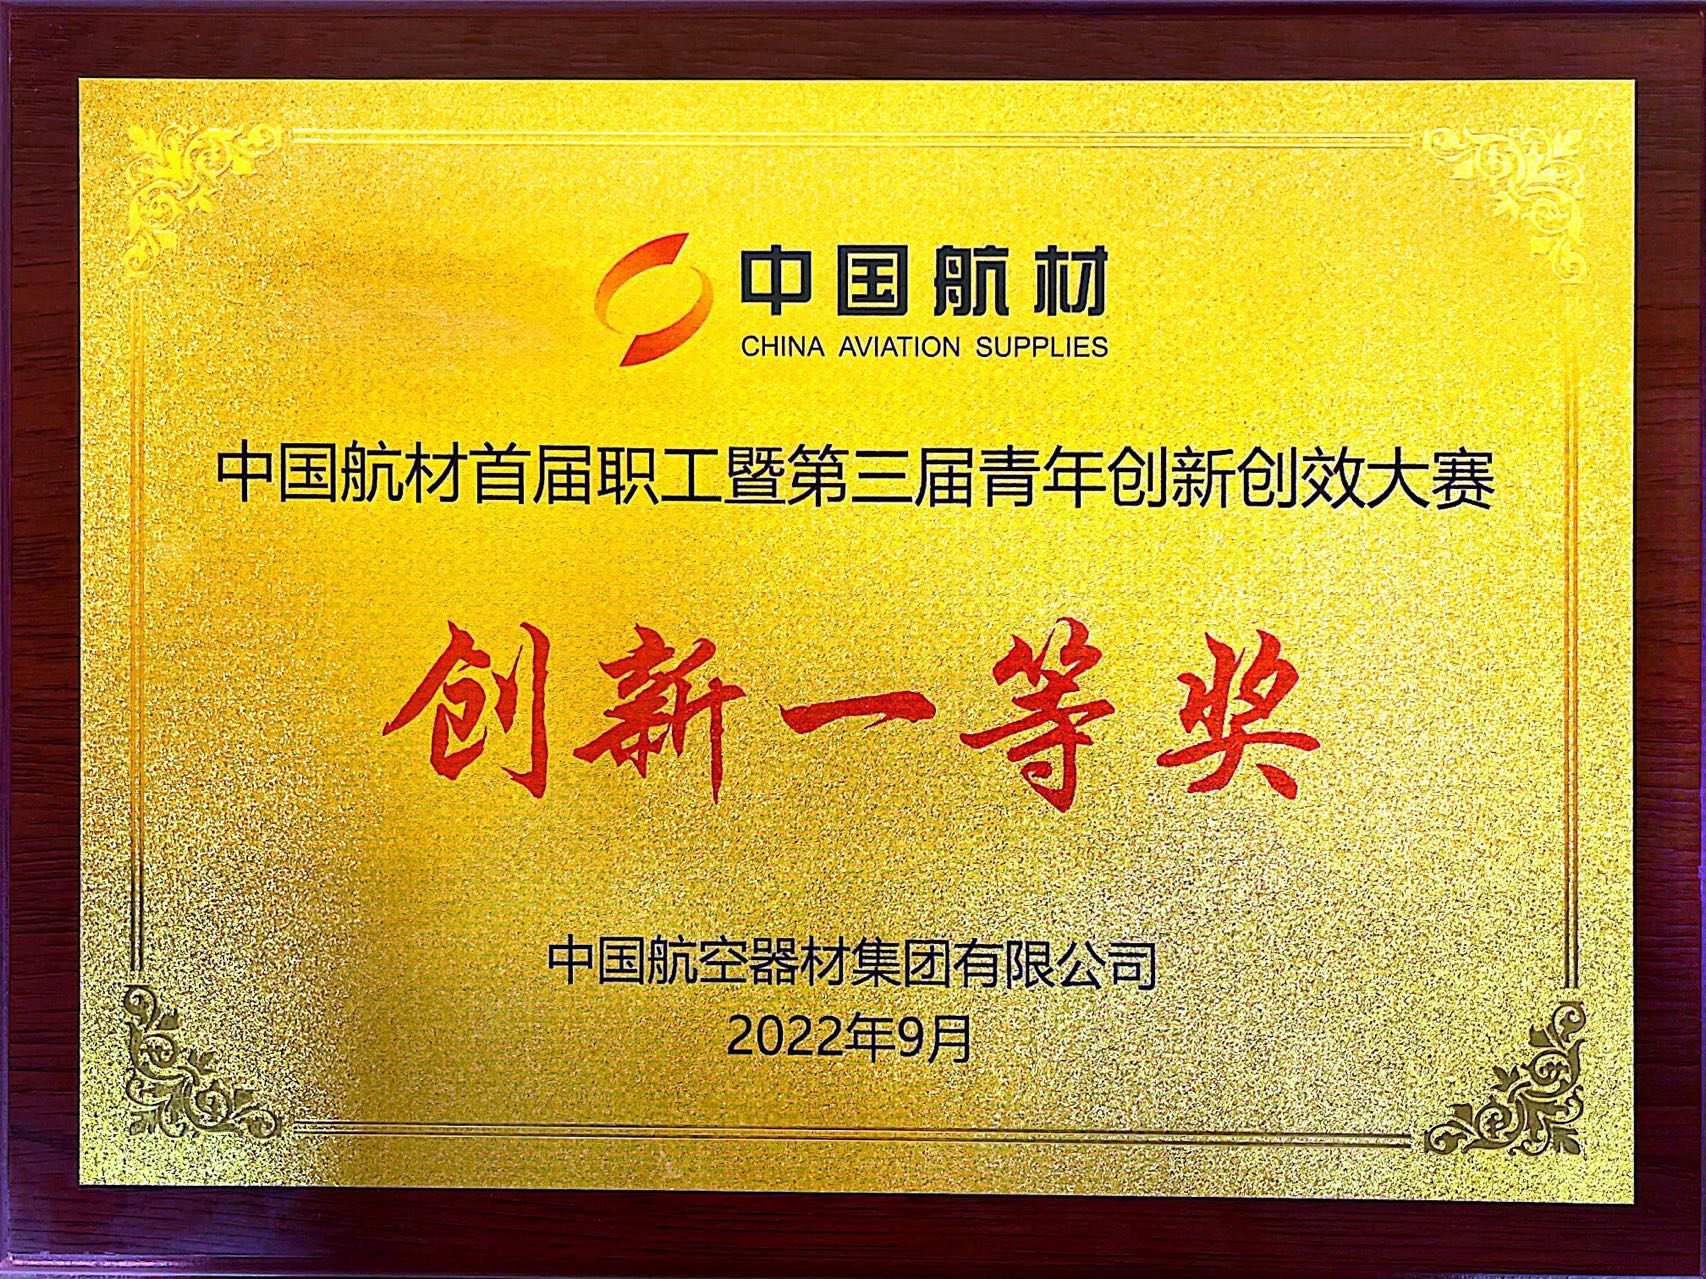 中国航材首届职工暨第三届青年创新创效大赛--创新一等奖